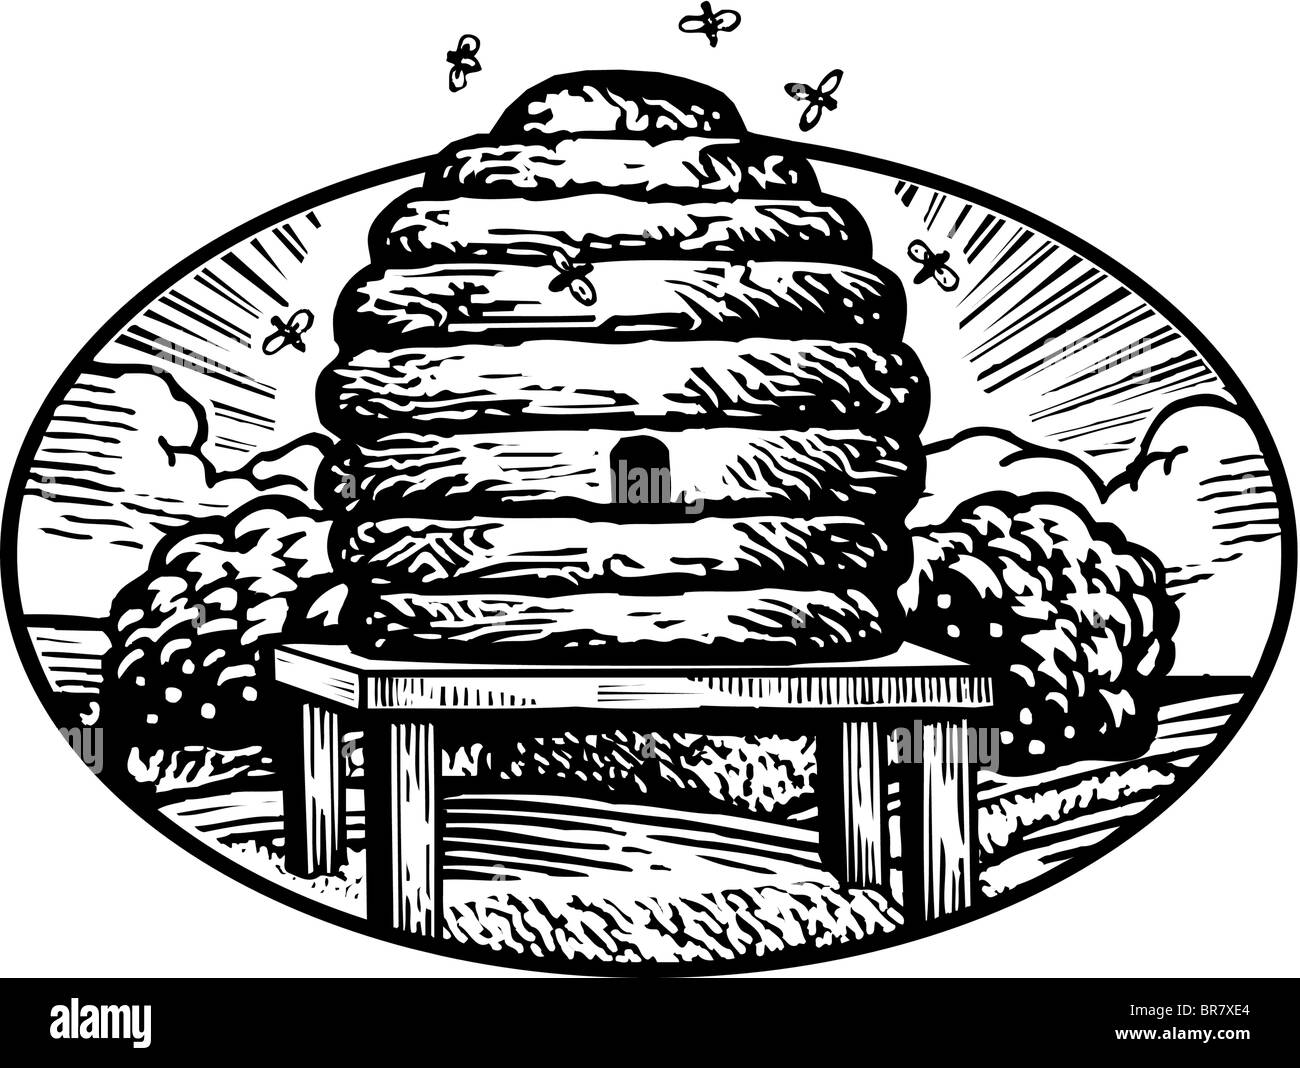 Zeichnung von einem Bienenstock in schwarz / weiß gezeichnet Stockfoto